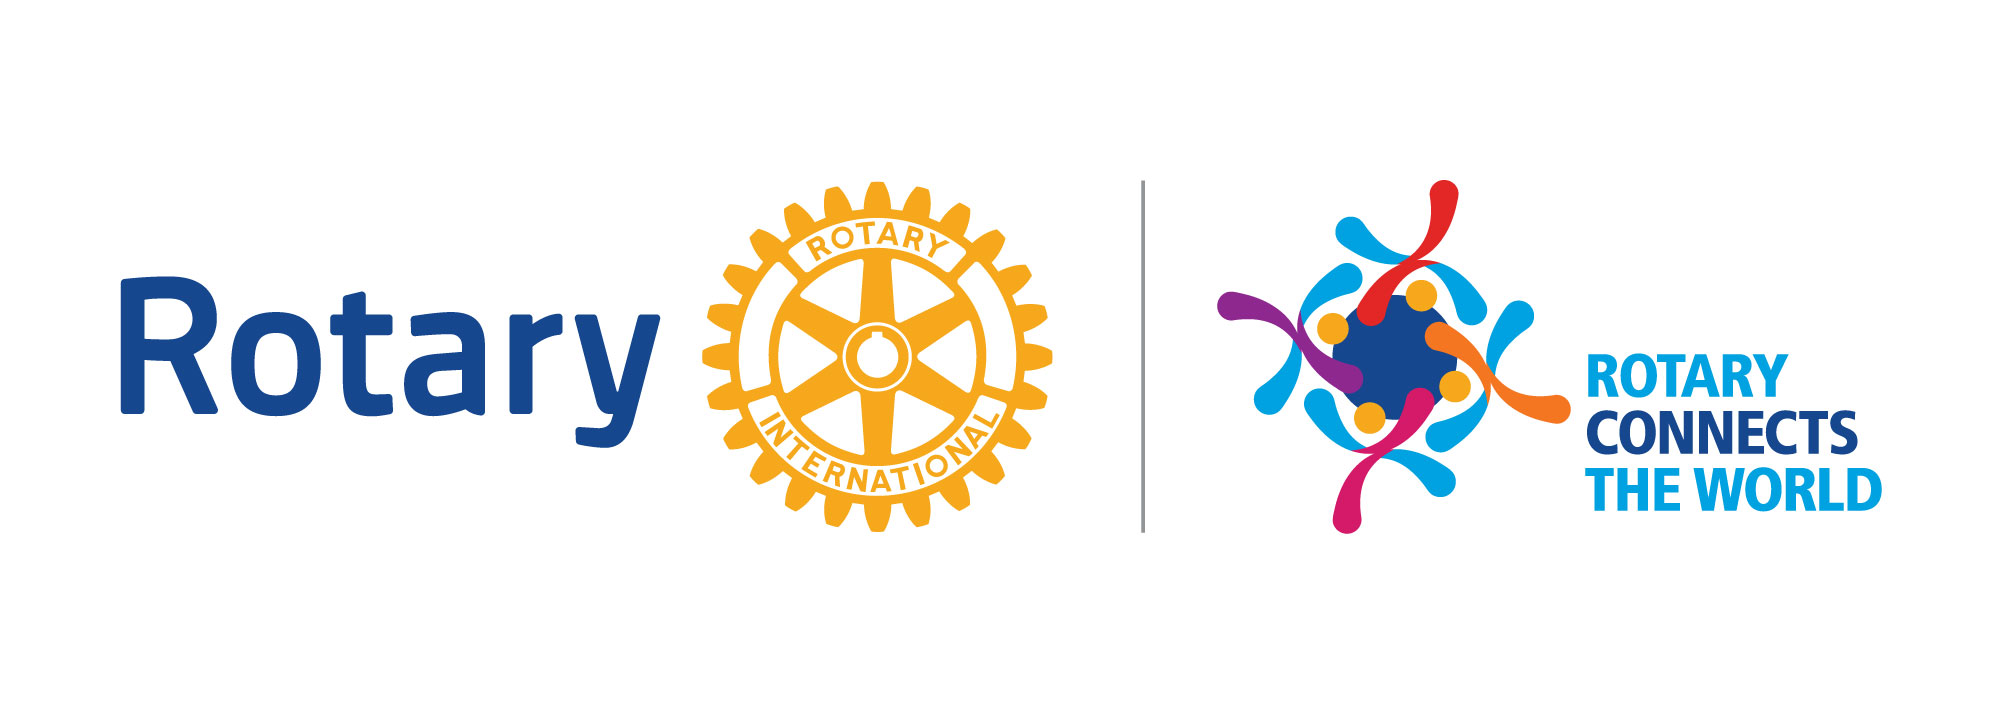 Happy New Rotary Year 2019-2020 | Rotary Club of Maraval